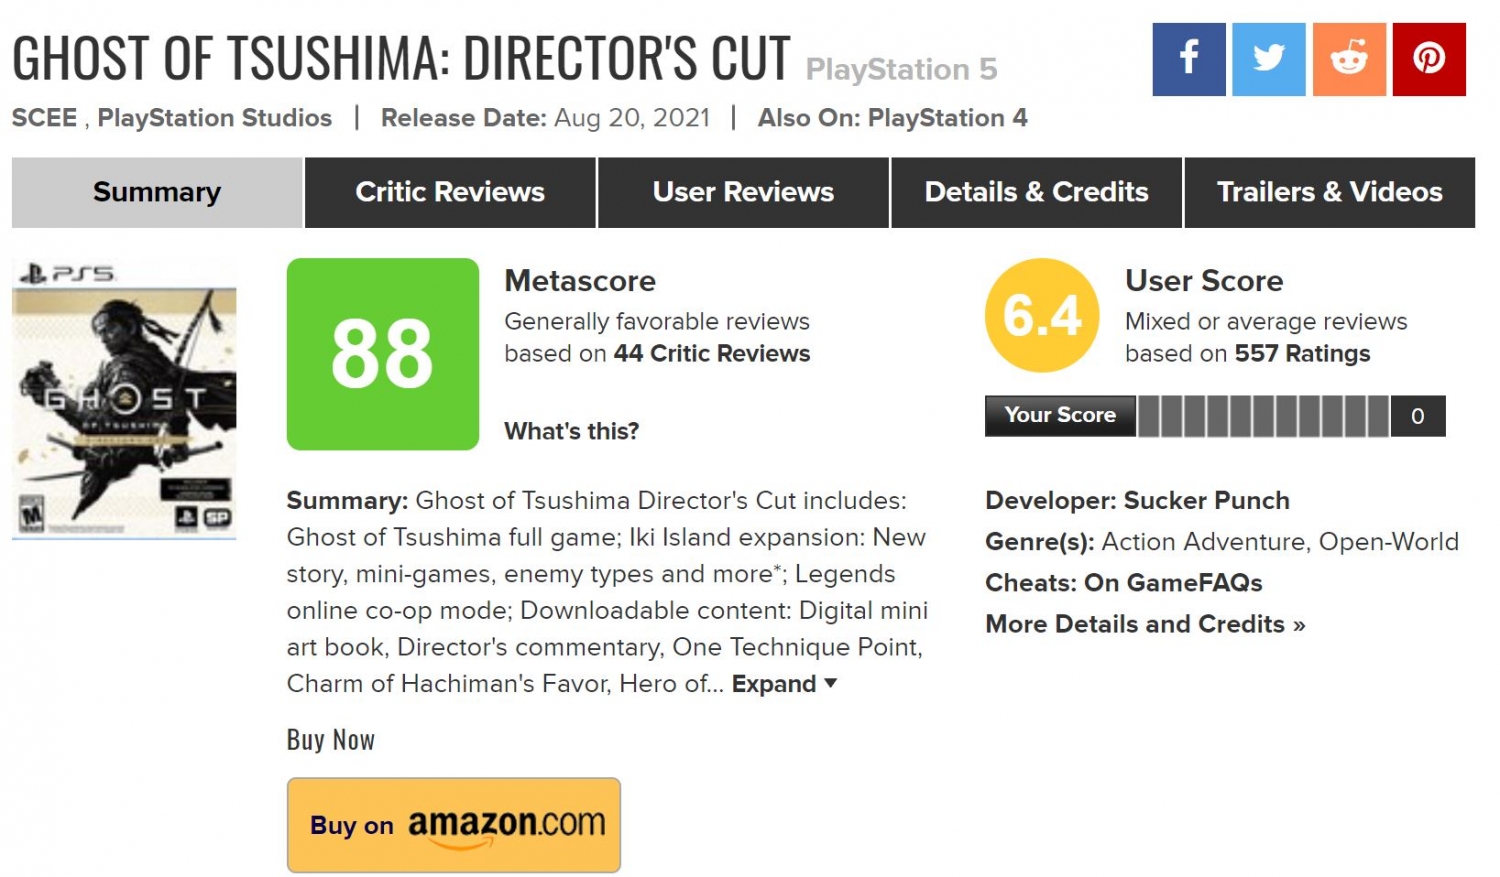 Ghost of Tsushima - Metacritic